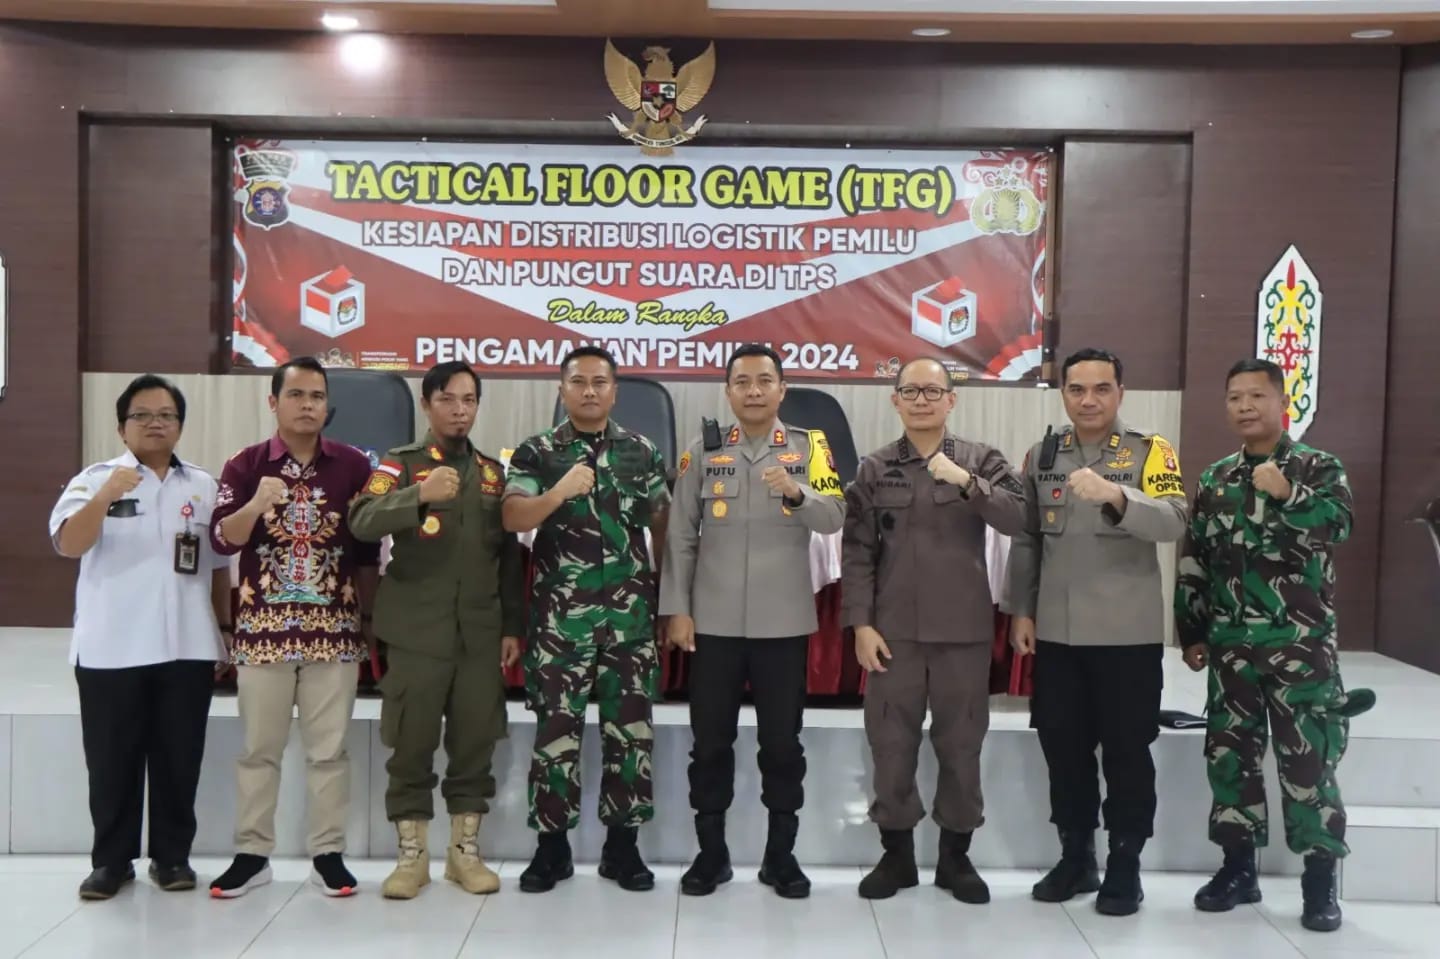 Tactical Floor Game sebagai Persiapan Matang Hadapi Pengamanan Pemilu 2024